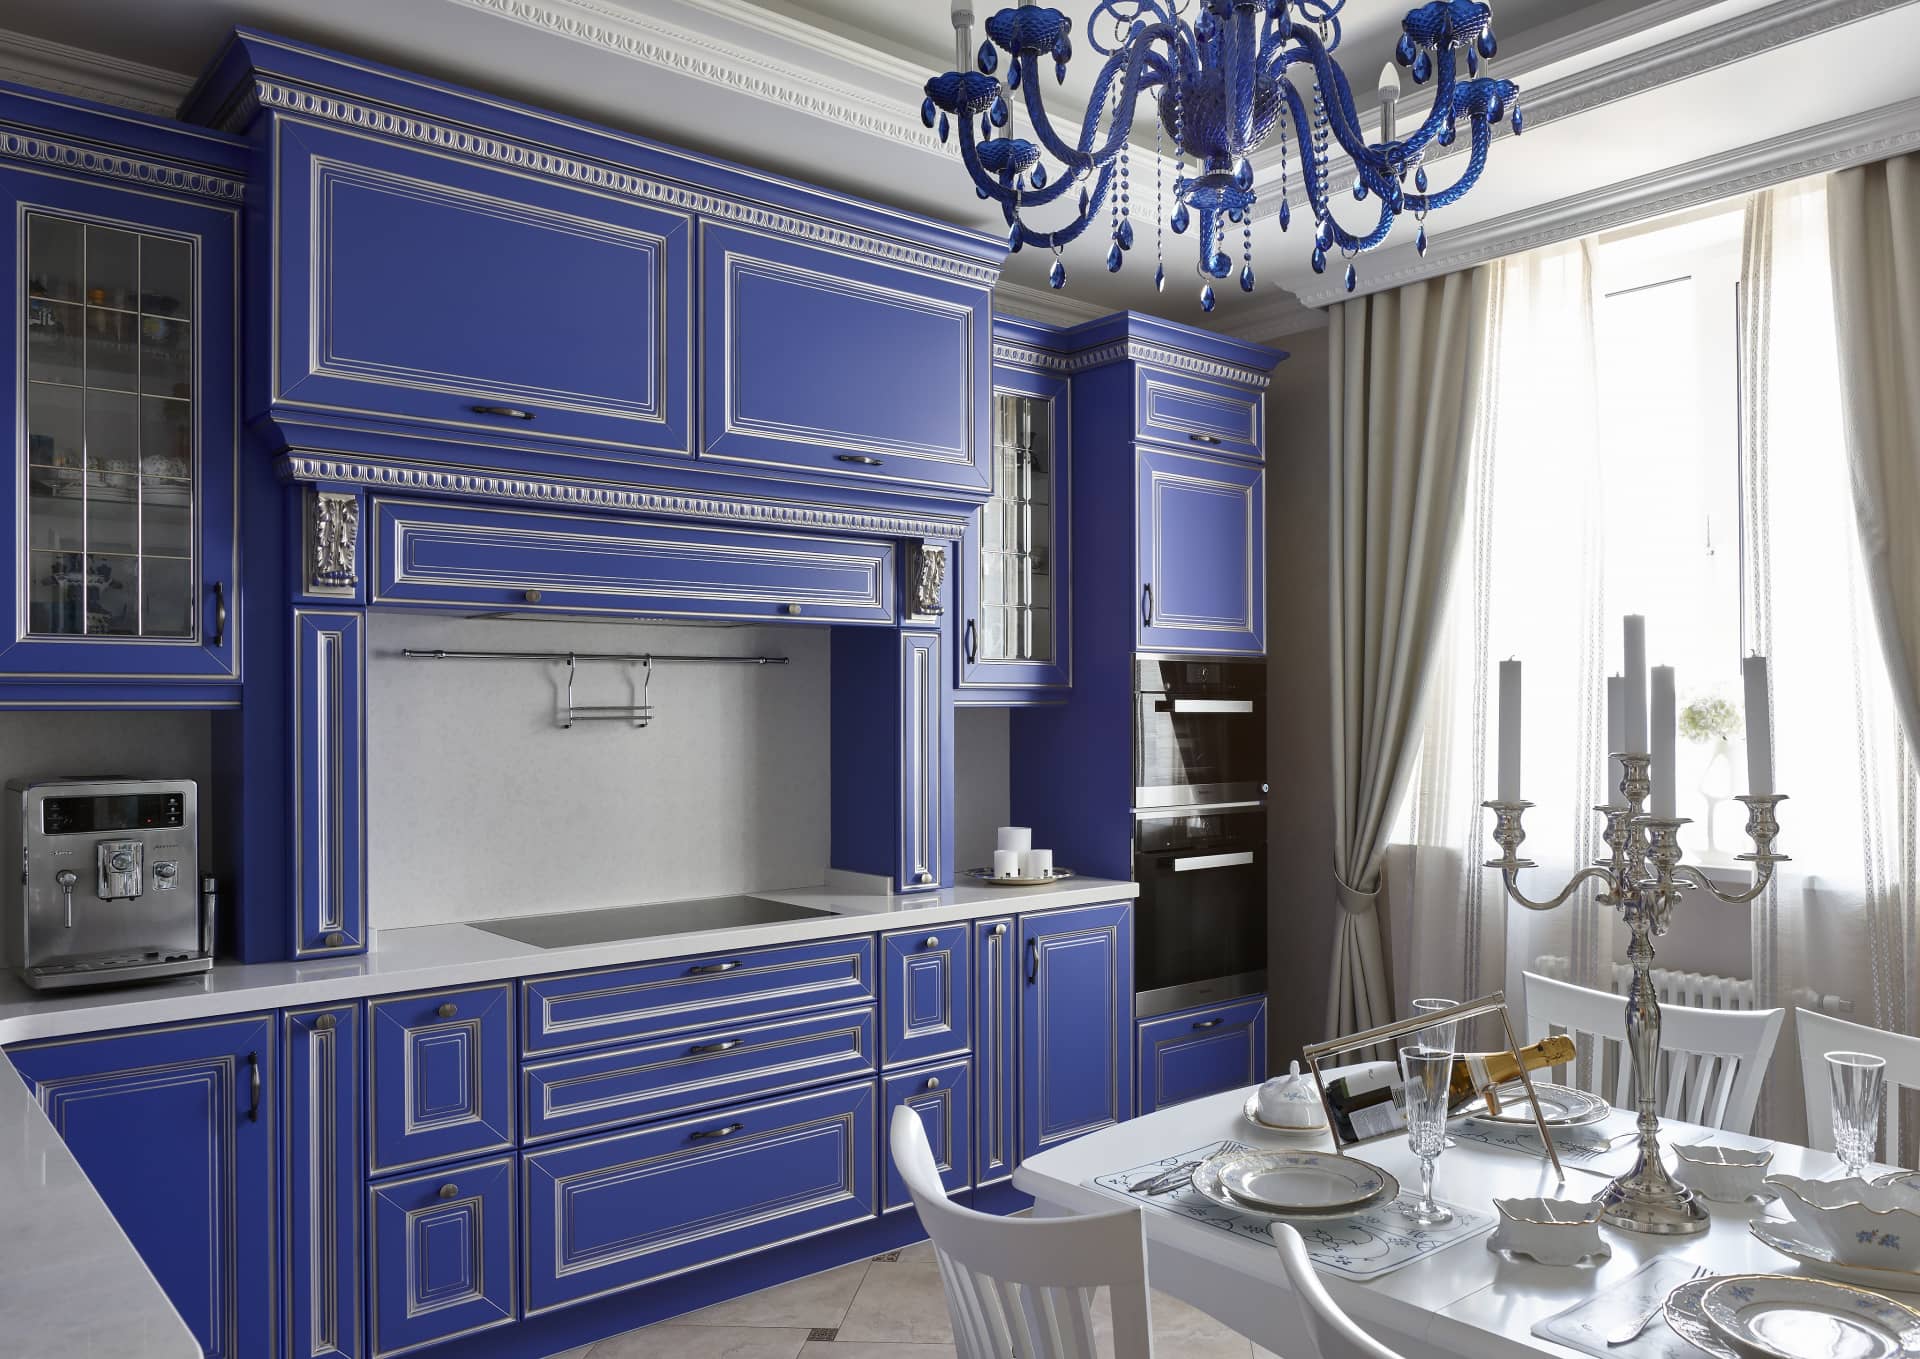 Кухня синего цвета с серебристыми вставками для роскоши